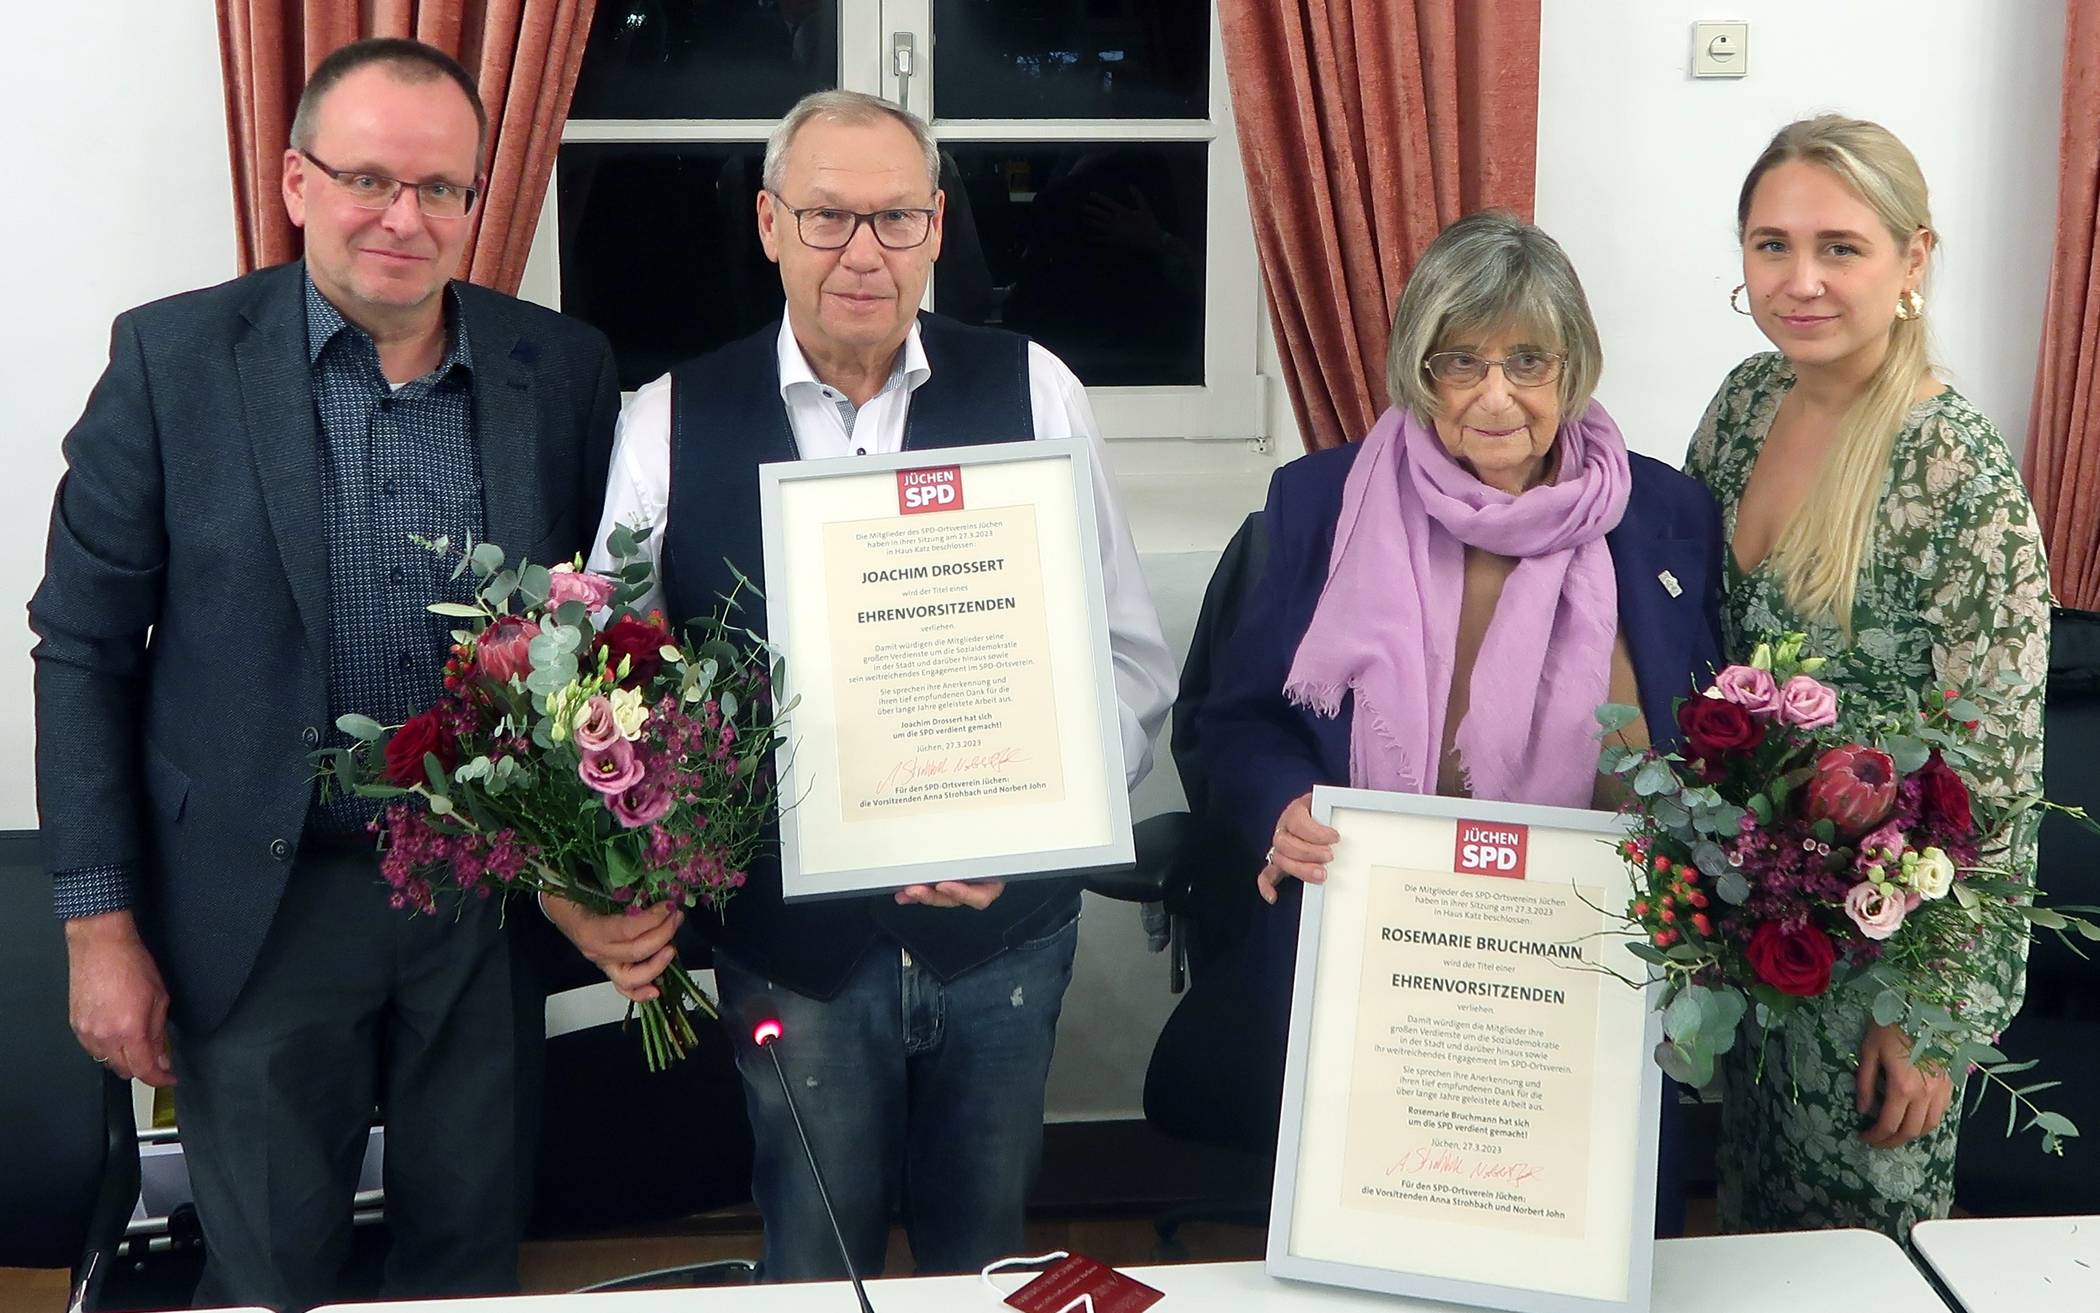 Die bisherige „Doppelspitze“ der Jüchener SPD mit Joachim Drossert und Rosemarie Bruchmann, die zu Ehrenvorsitzenden gewählt wurden, eingerahmt von den neuen Ortsvereinsvorsitzenden Norbert John und Anna Strohbach.